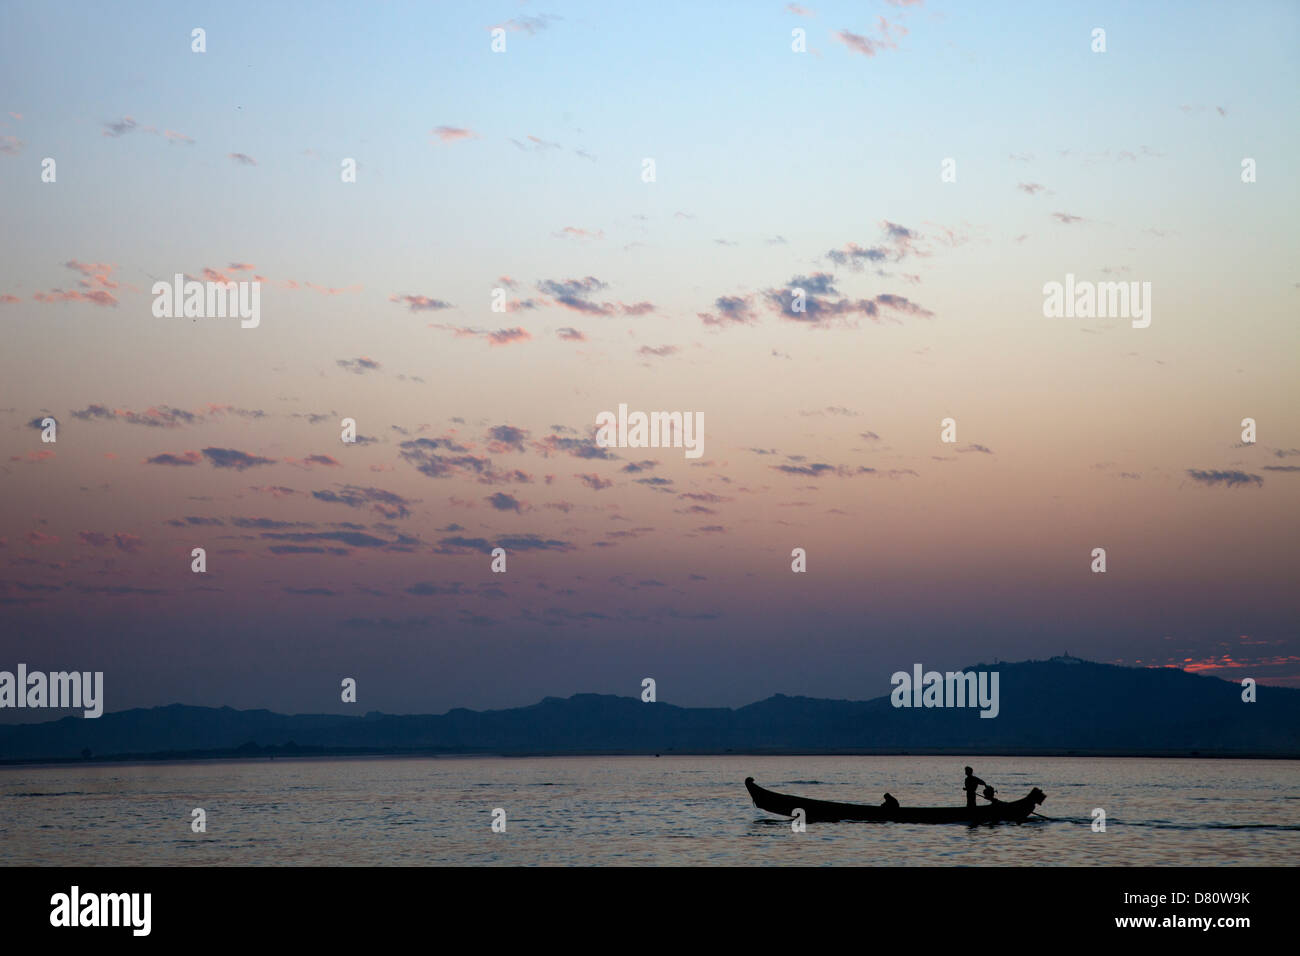 Vivid dusk over the Irrawaddy River at Mandalay, Myanmar Stock Photo